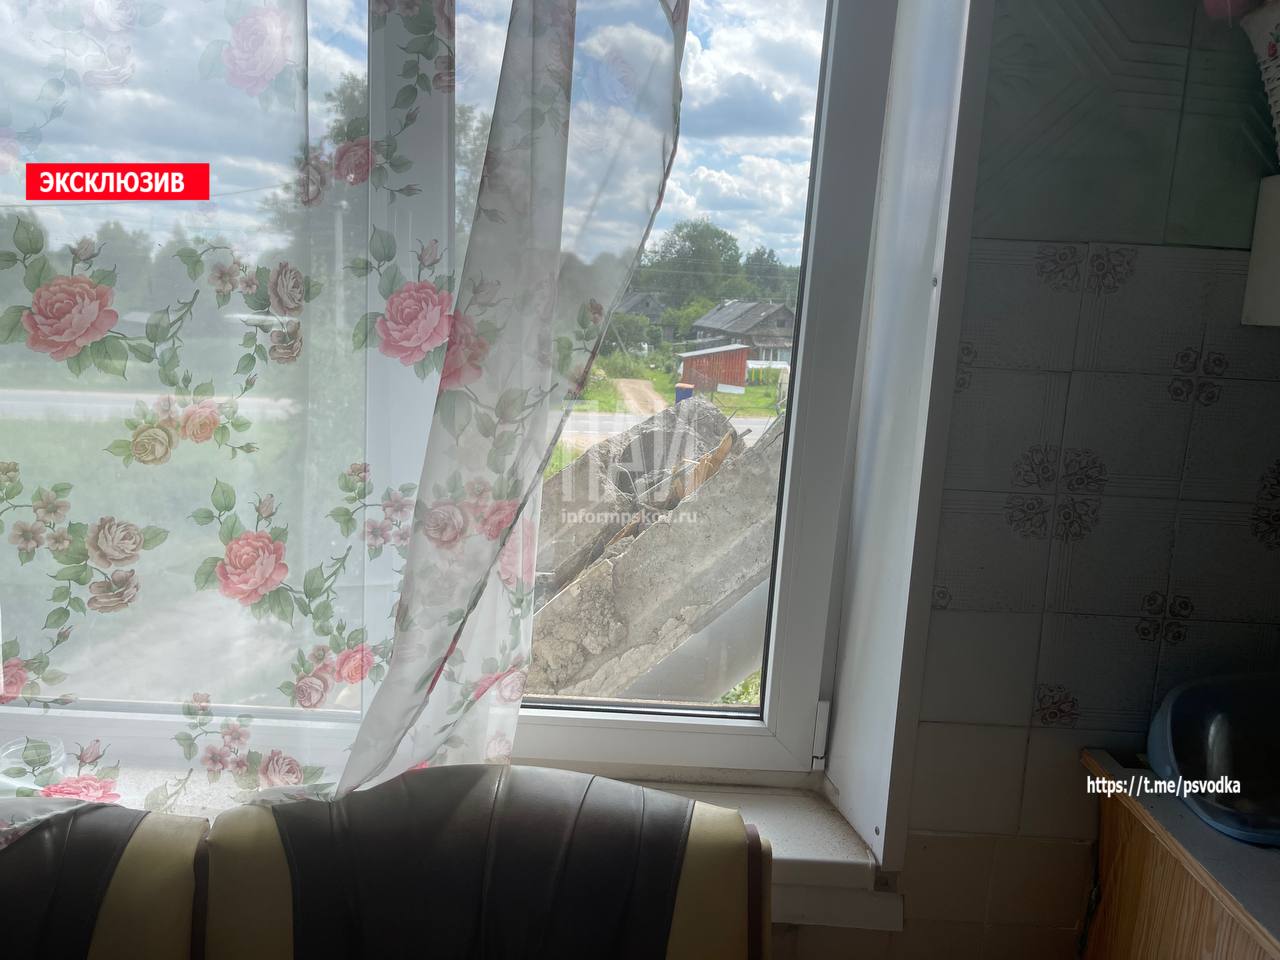 Жильцов дома с рухнувшими балконами разместят в Плюсской больнице